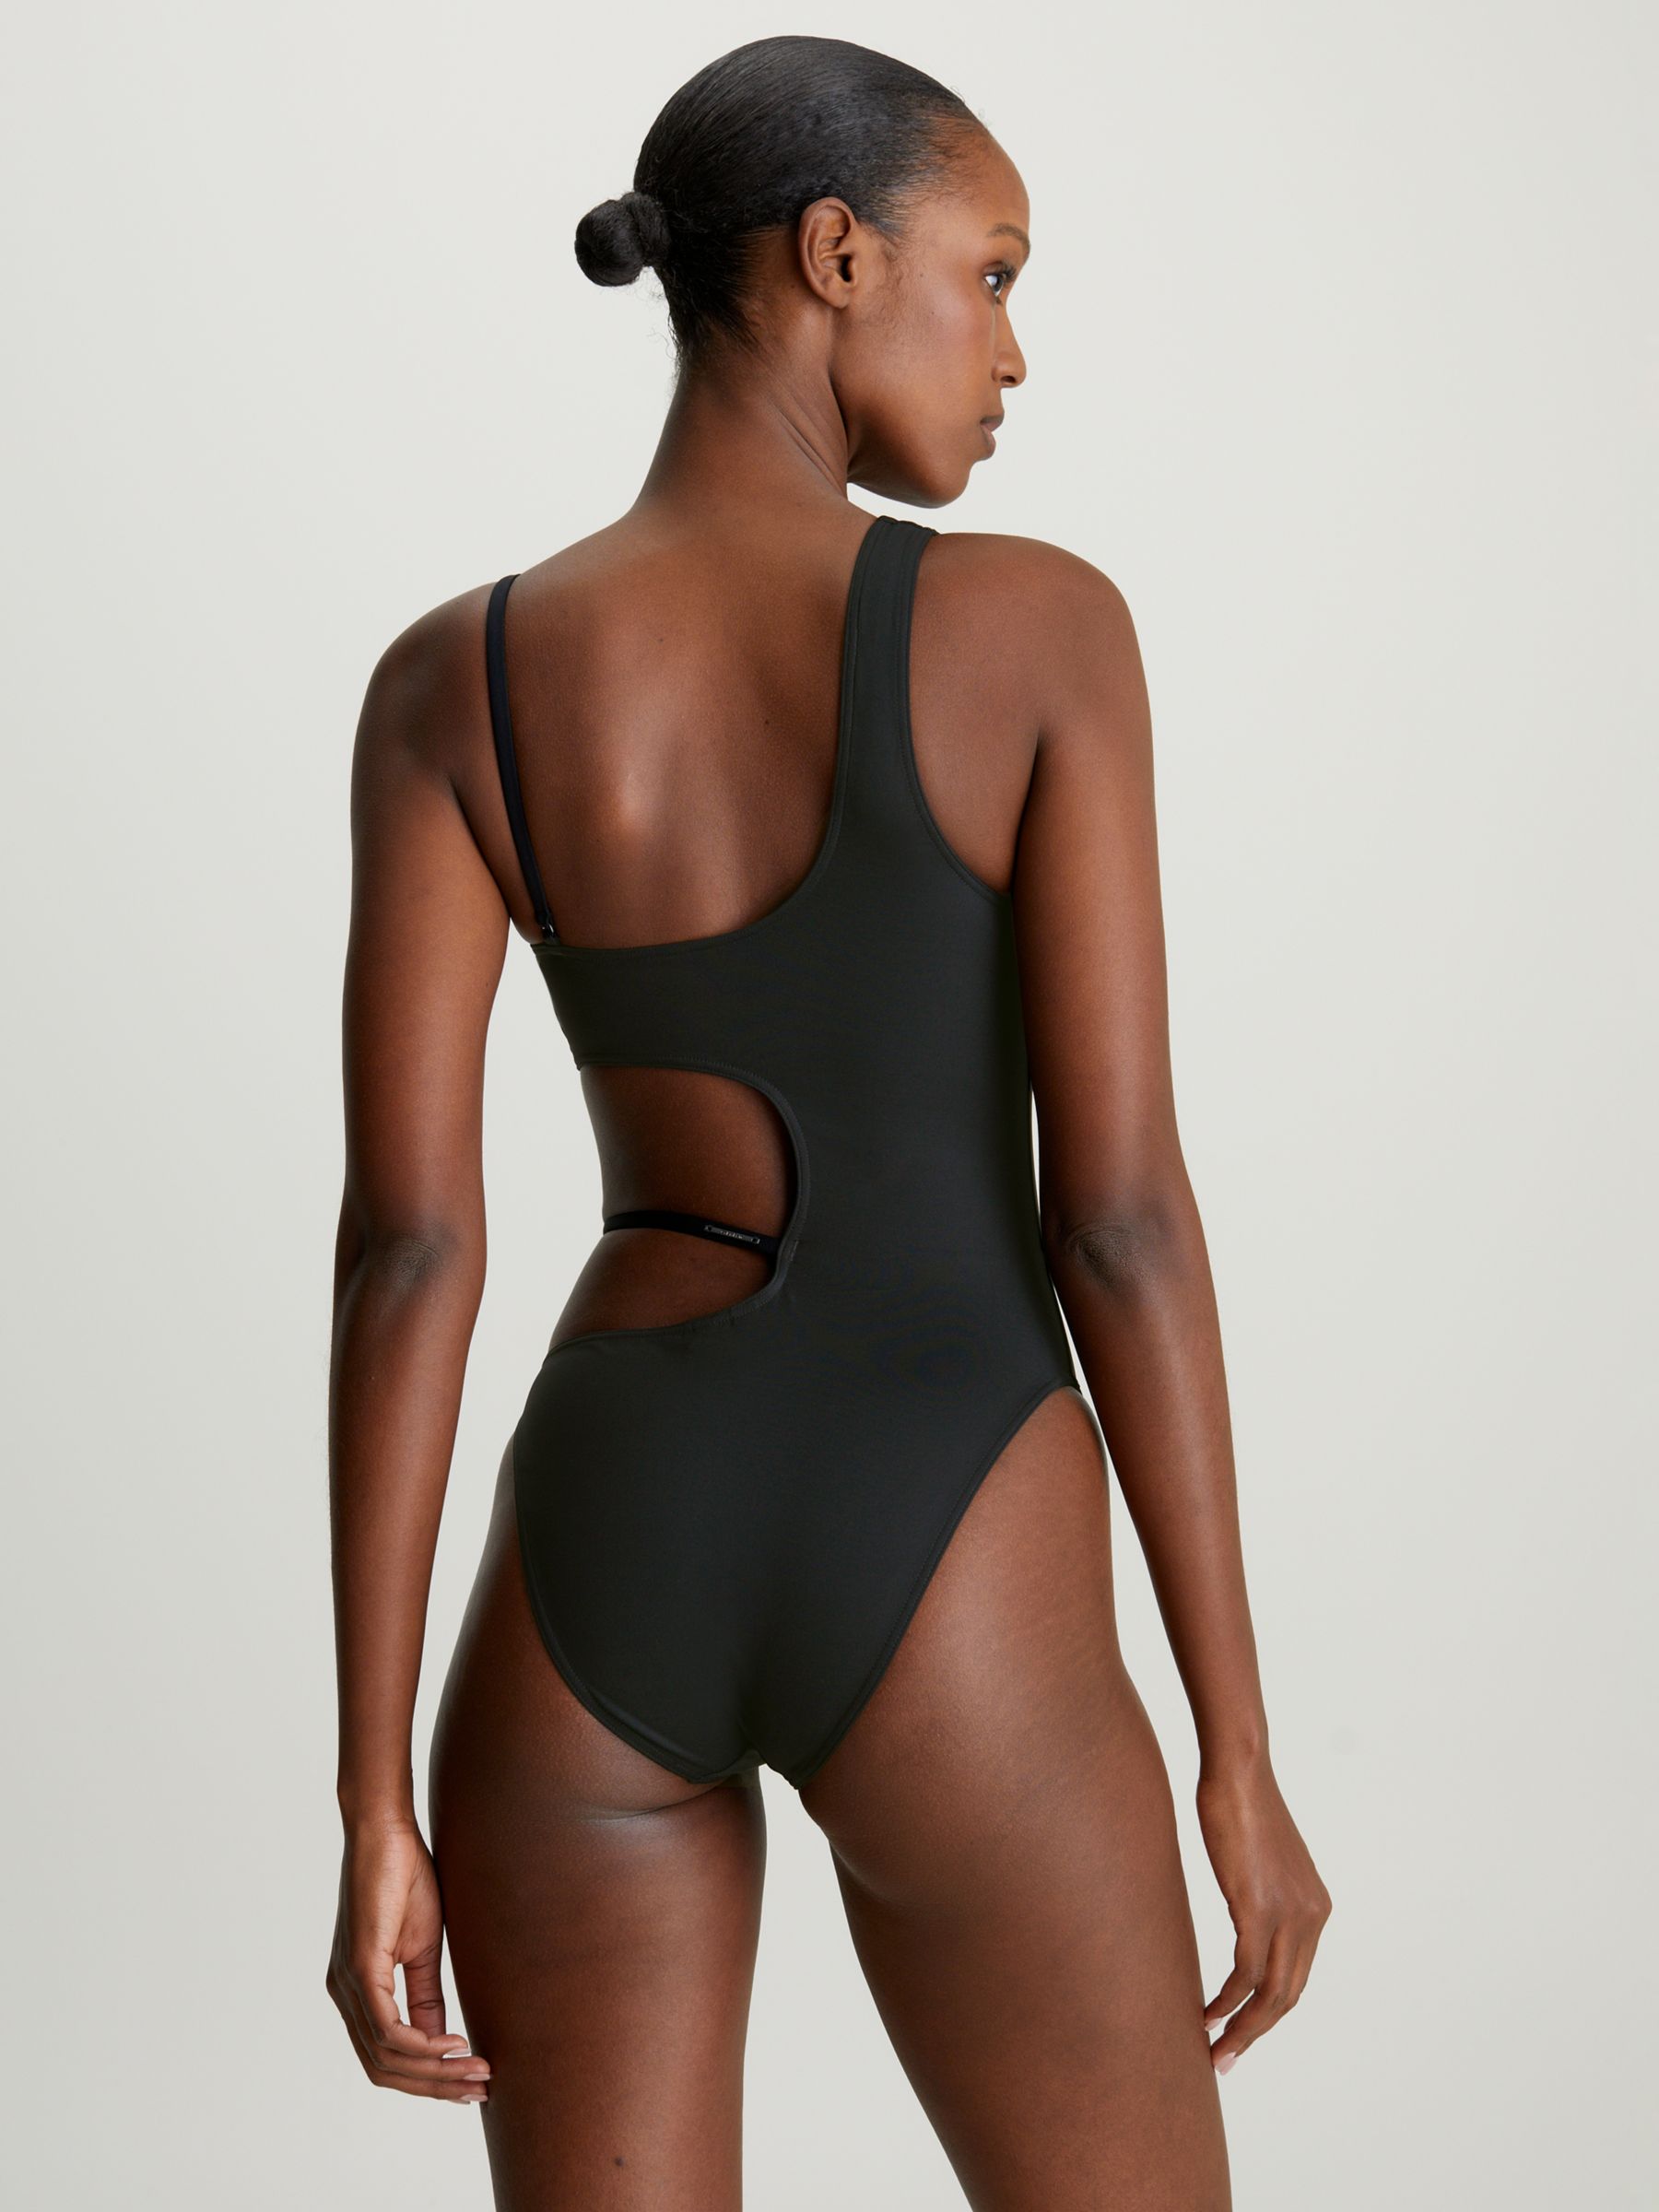 Calvin Klein Cut Out Swimsuit, Black, L